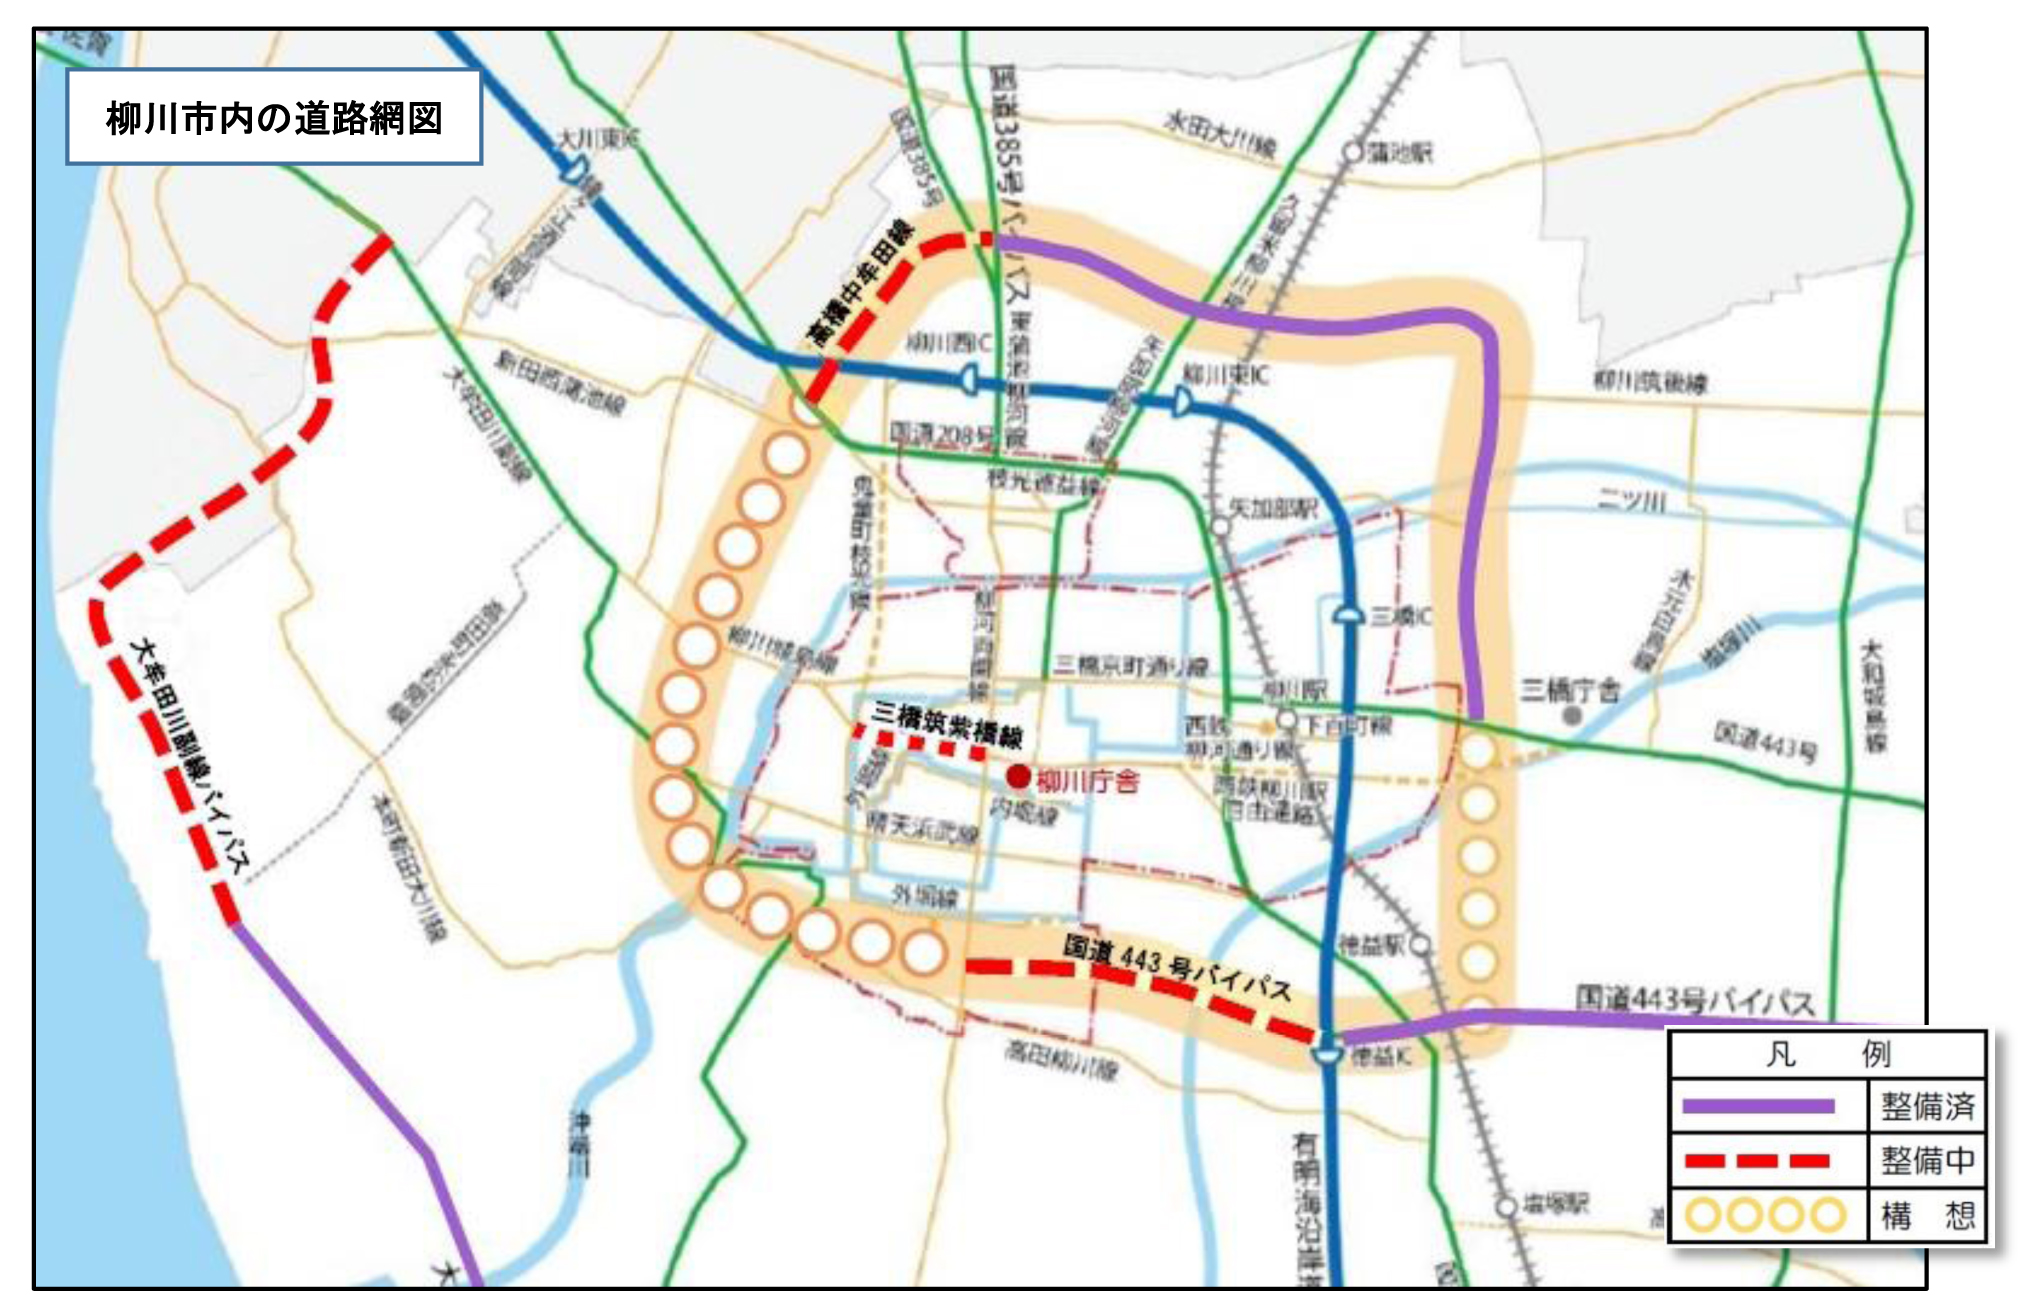 柳川市内の道路網図